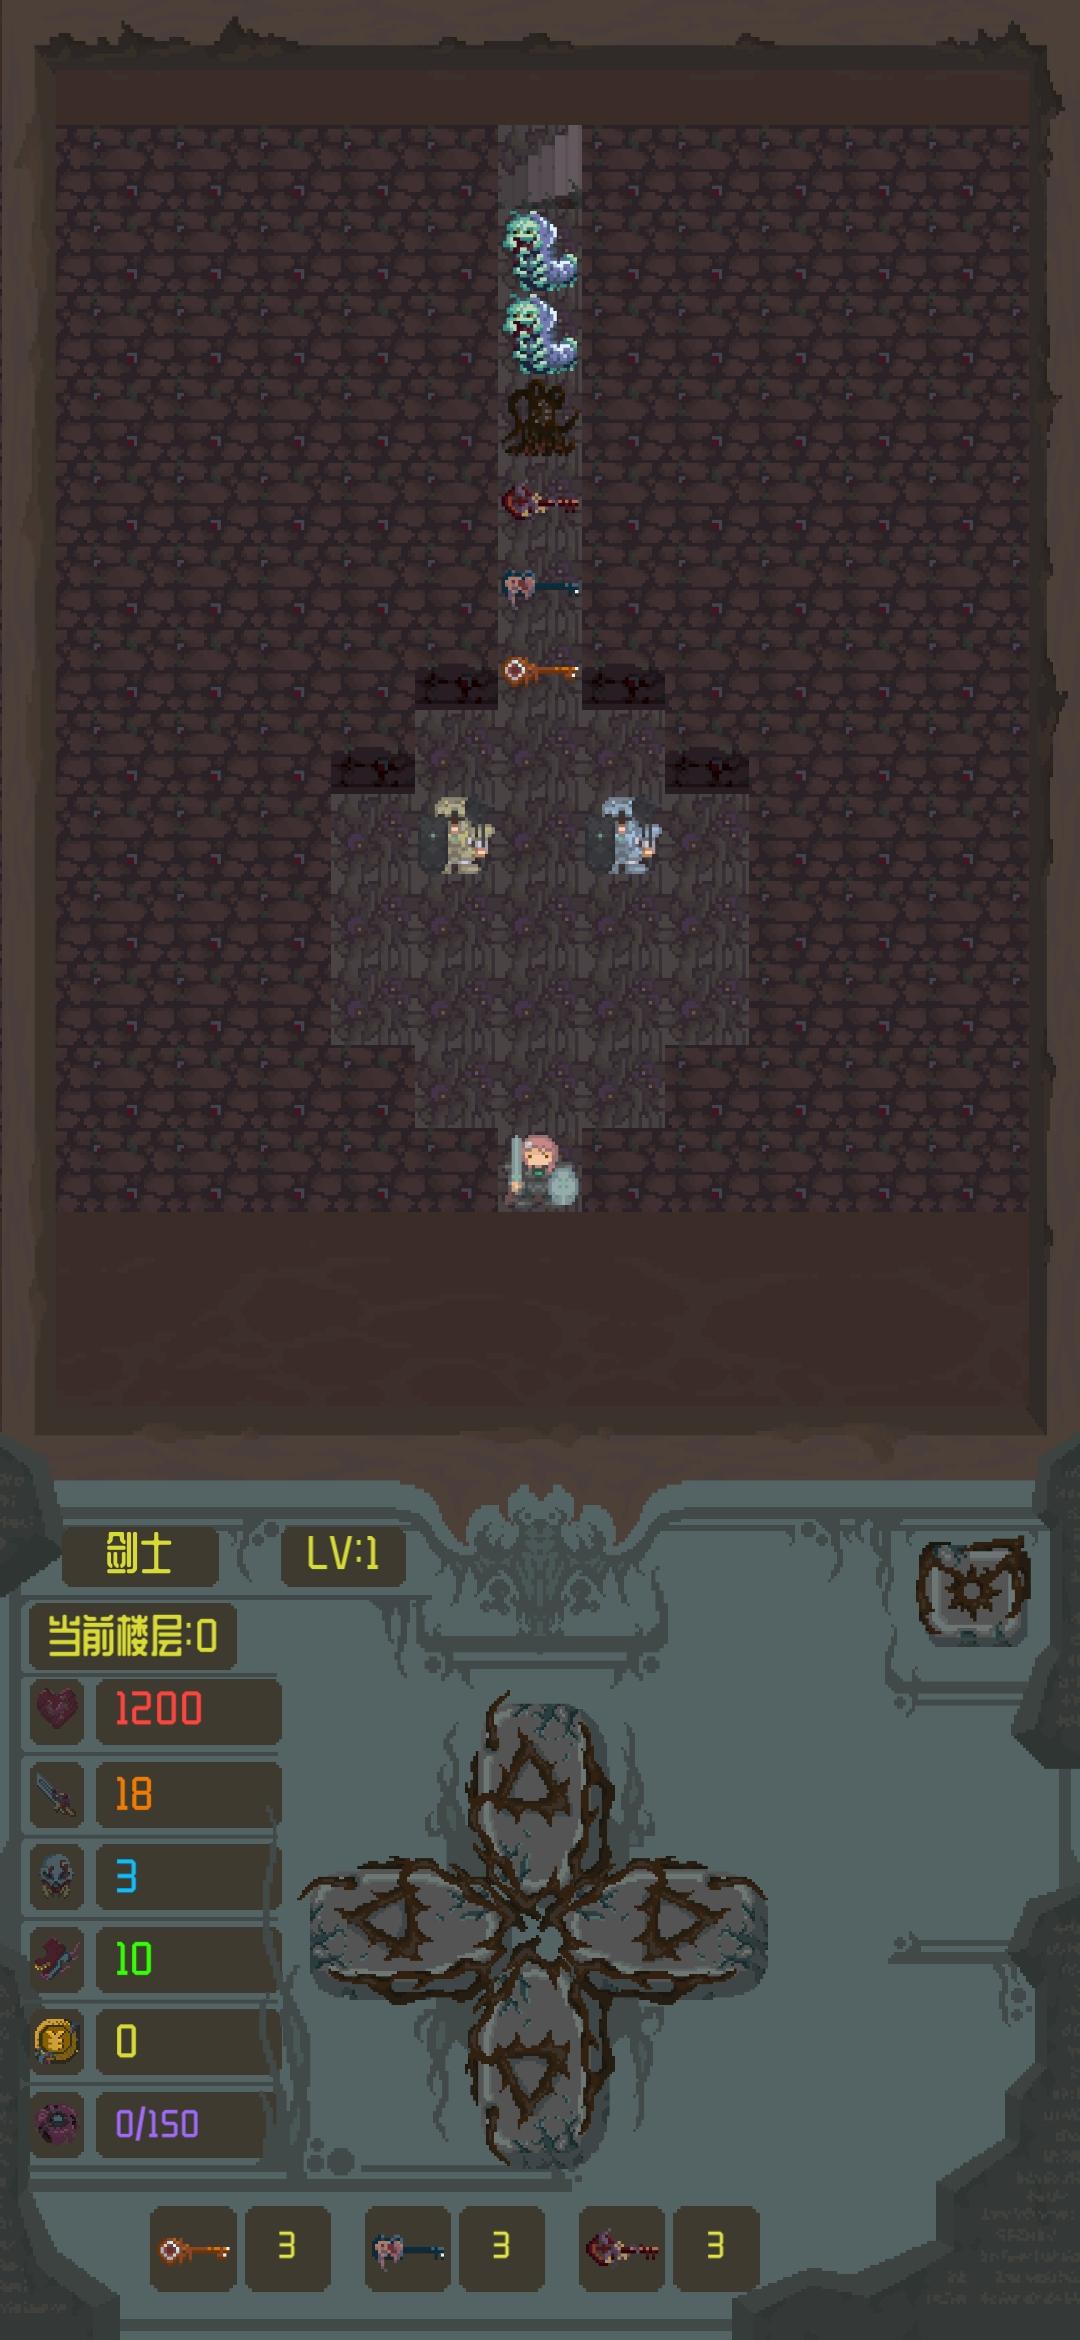 Screenshot 1 of Puteri serangan ke atas menara ajaib 0.1